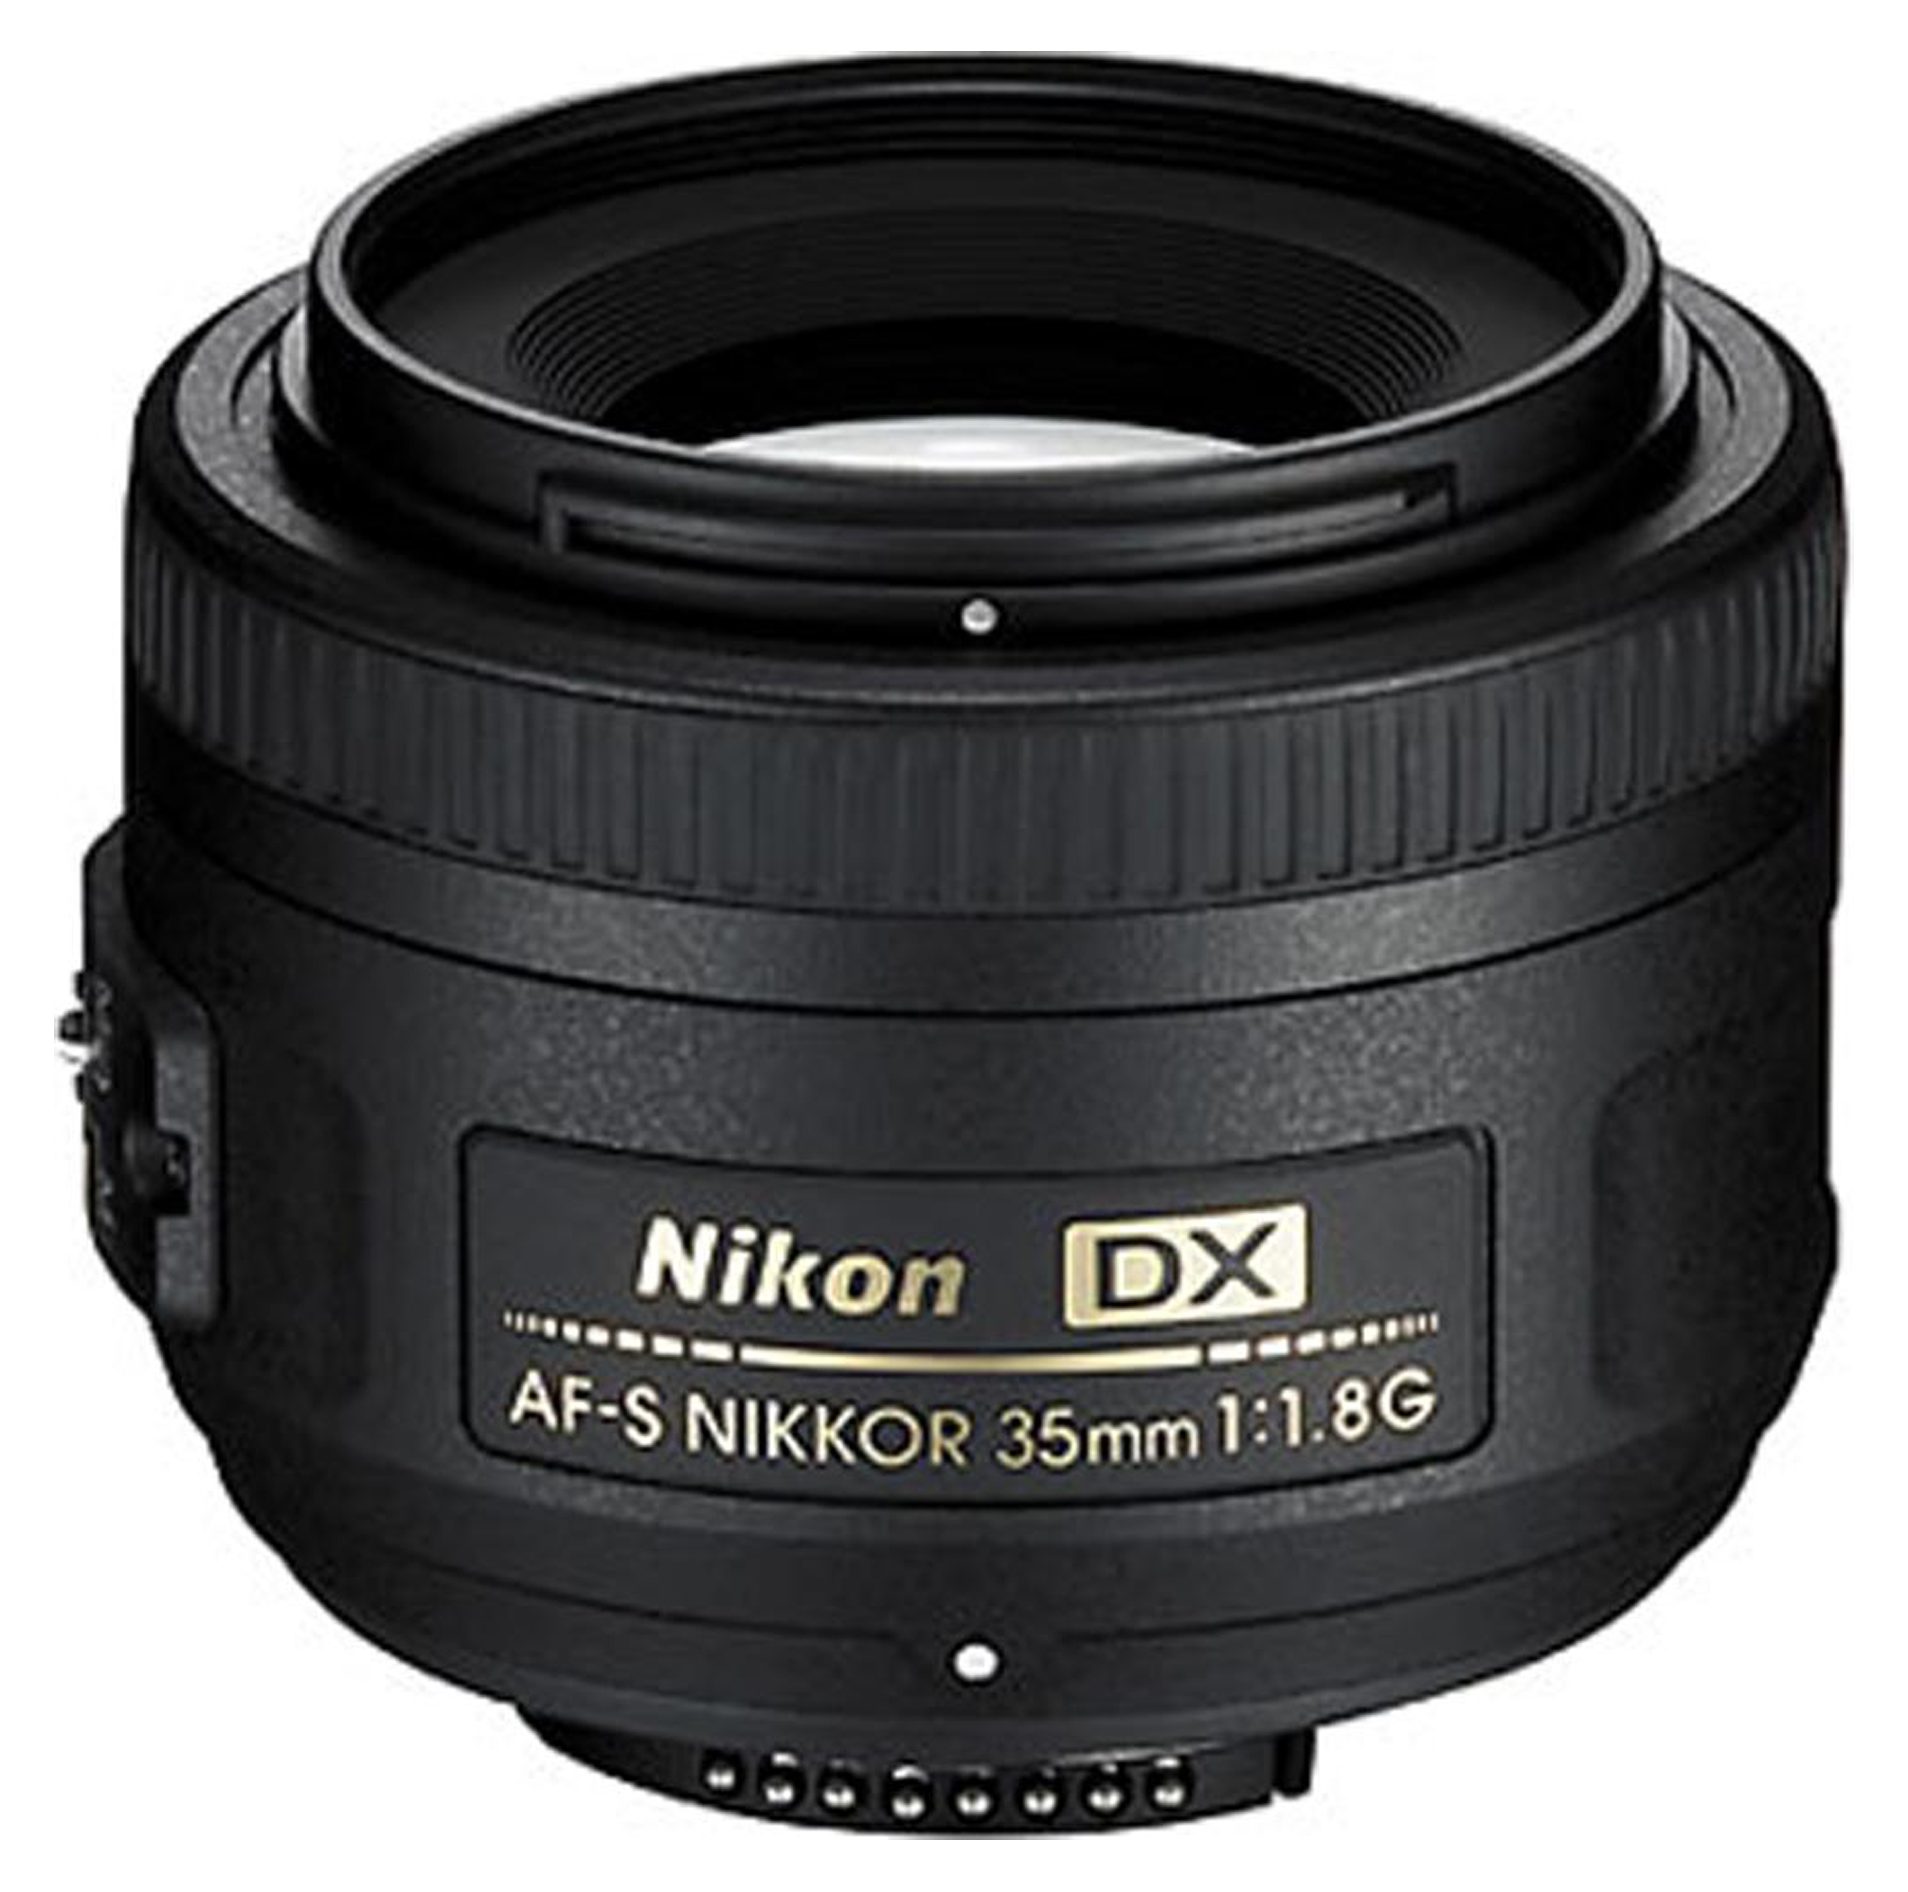 Купить объективы nikon f. Nikon 35mm f/1.8g af-s DX Nikkor. Nikon DX af-s Nikkor 35mm 1 1.8g. Nikon 35mm f/1.8g af-s Nikkor. Af-s DX Nikkor 35mm f/1.8g.